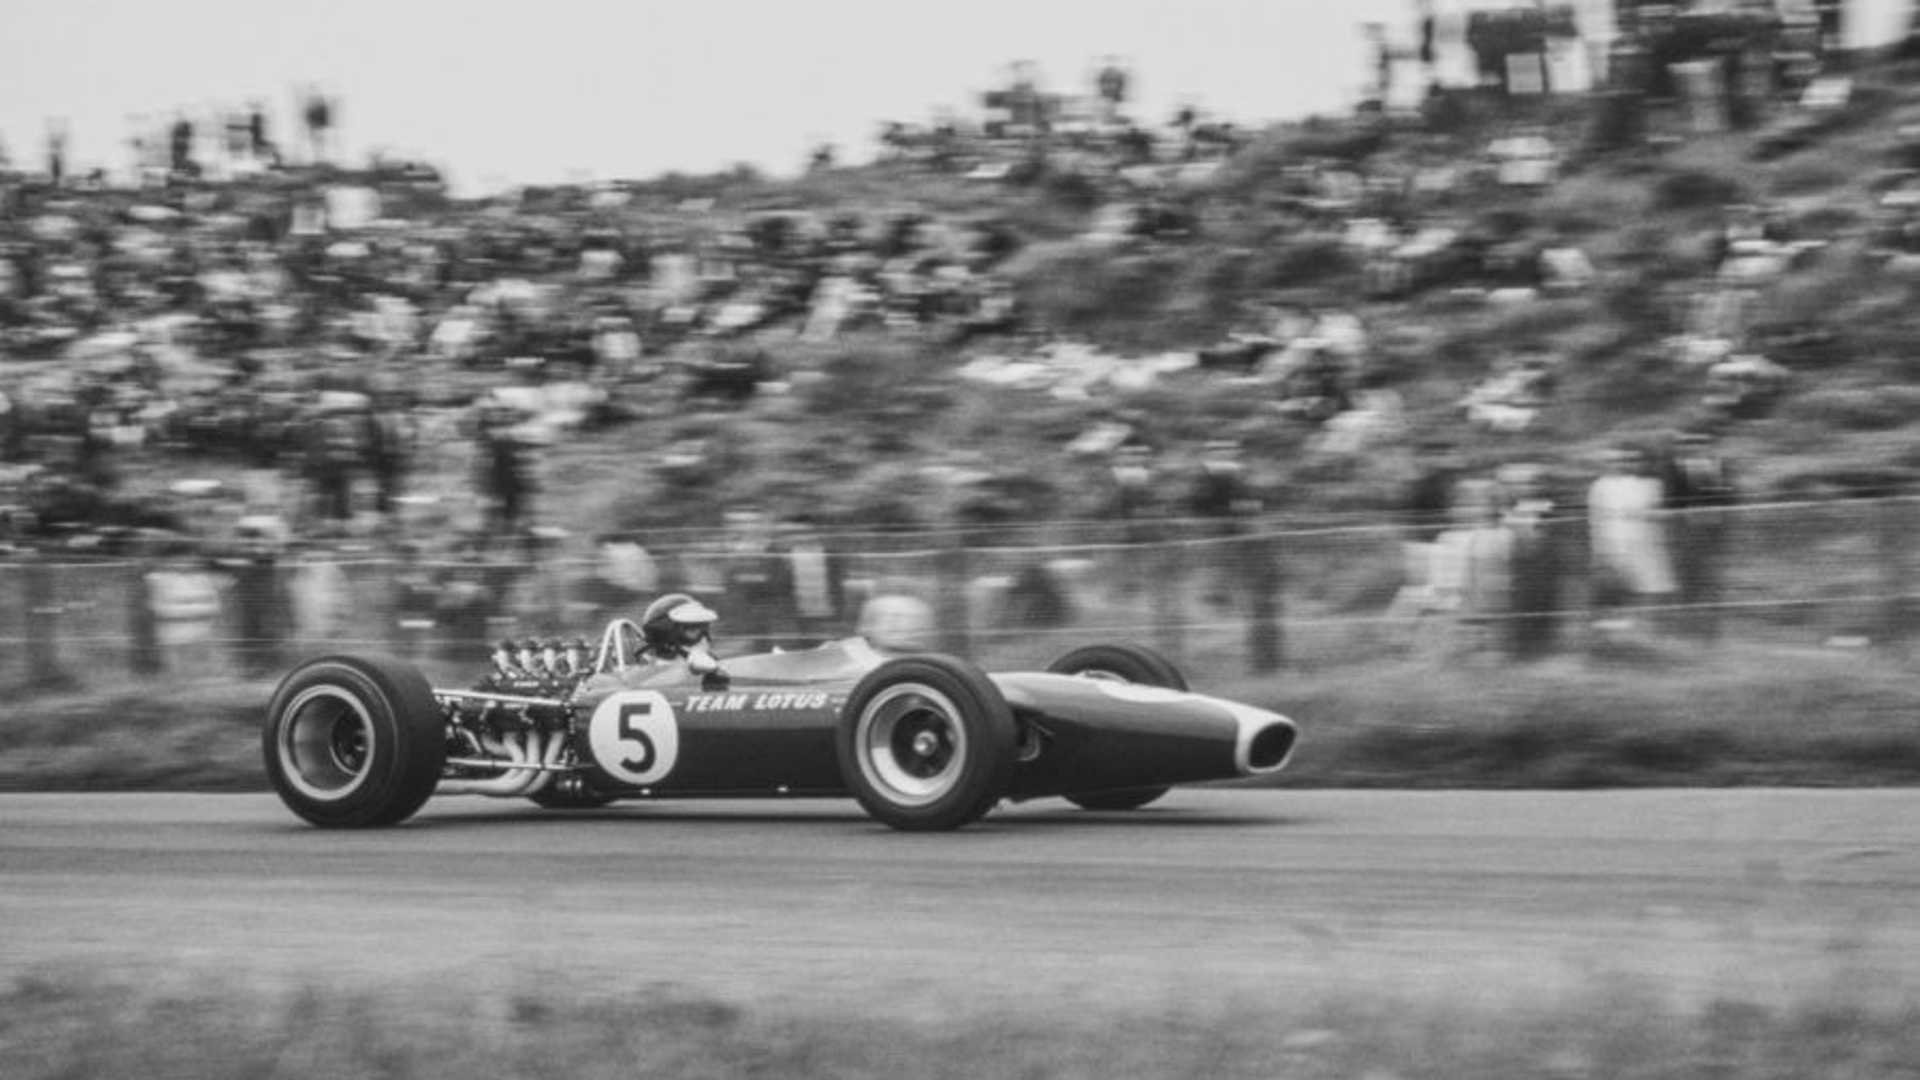 1967-lotus-type-49-f1-racer2.jpg